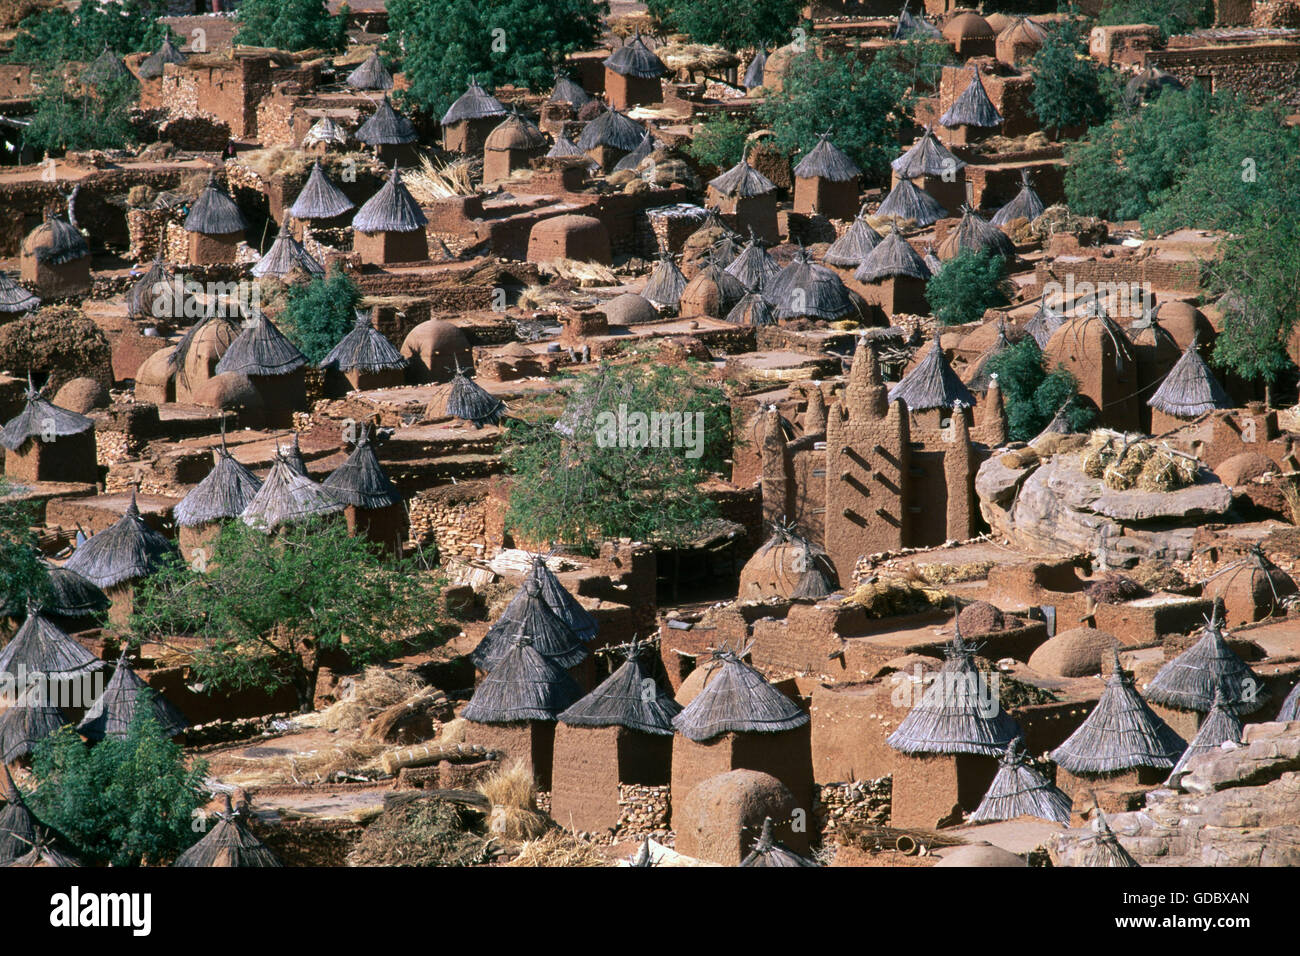 Clay huts, Dogonland, Mali Stock Photo